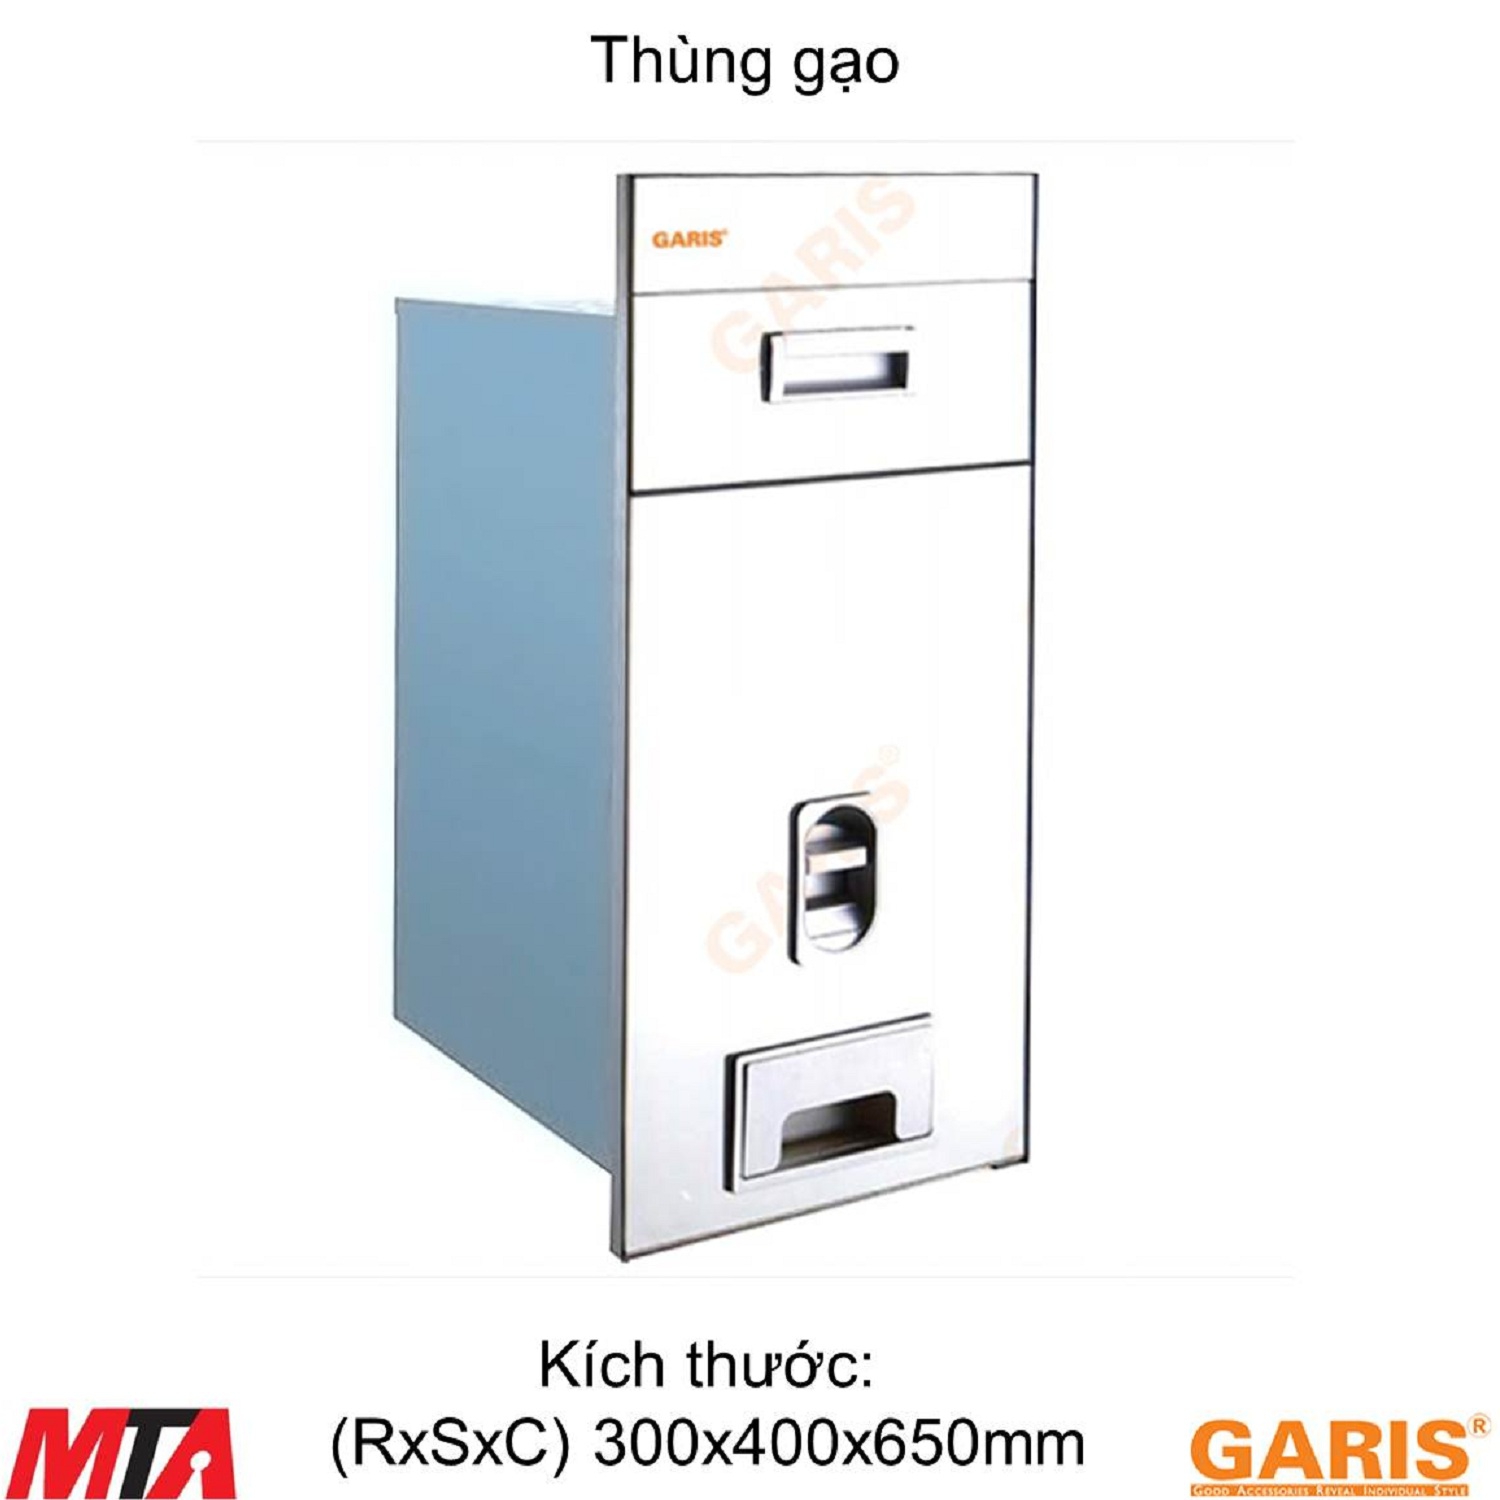 Thung-gao